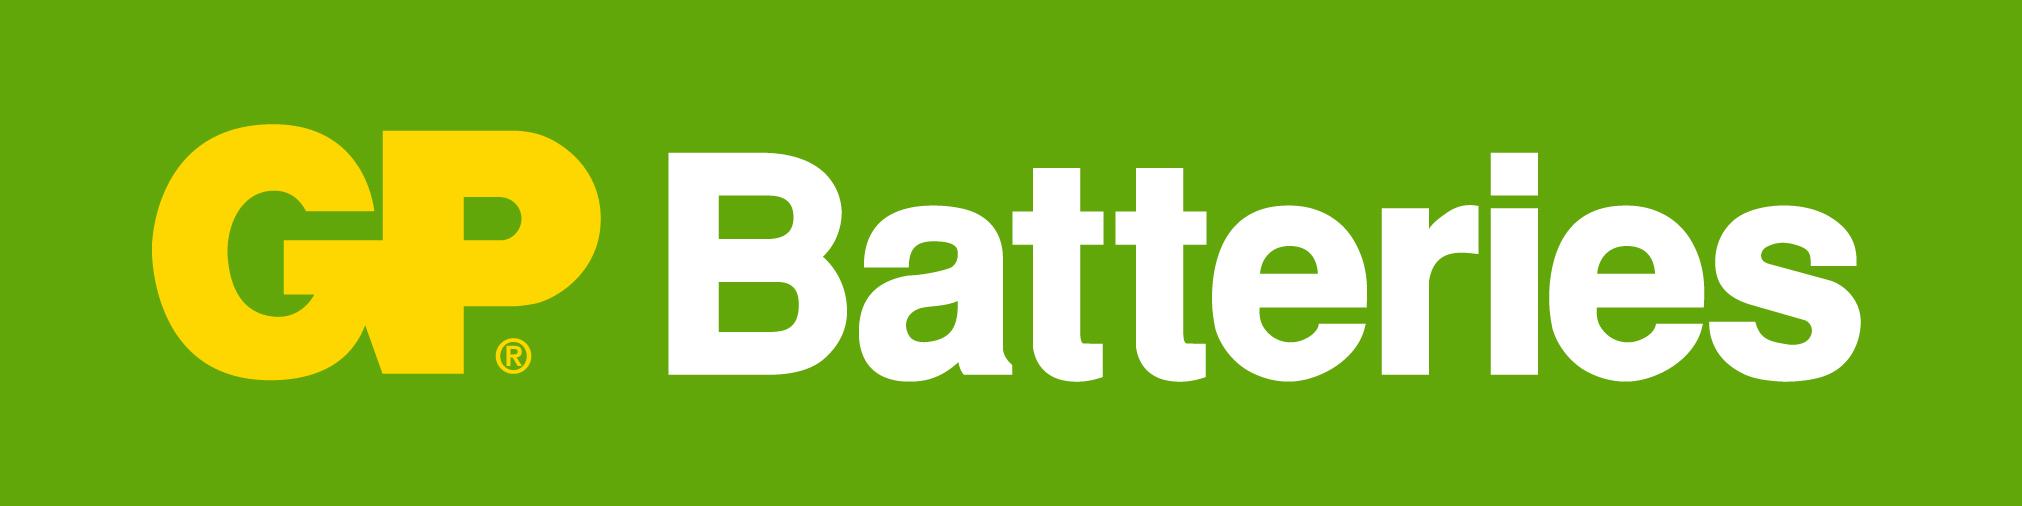 uk.gpbatteries.com Customer reviews